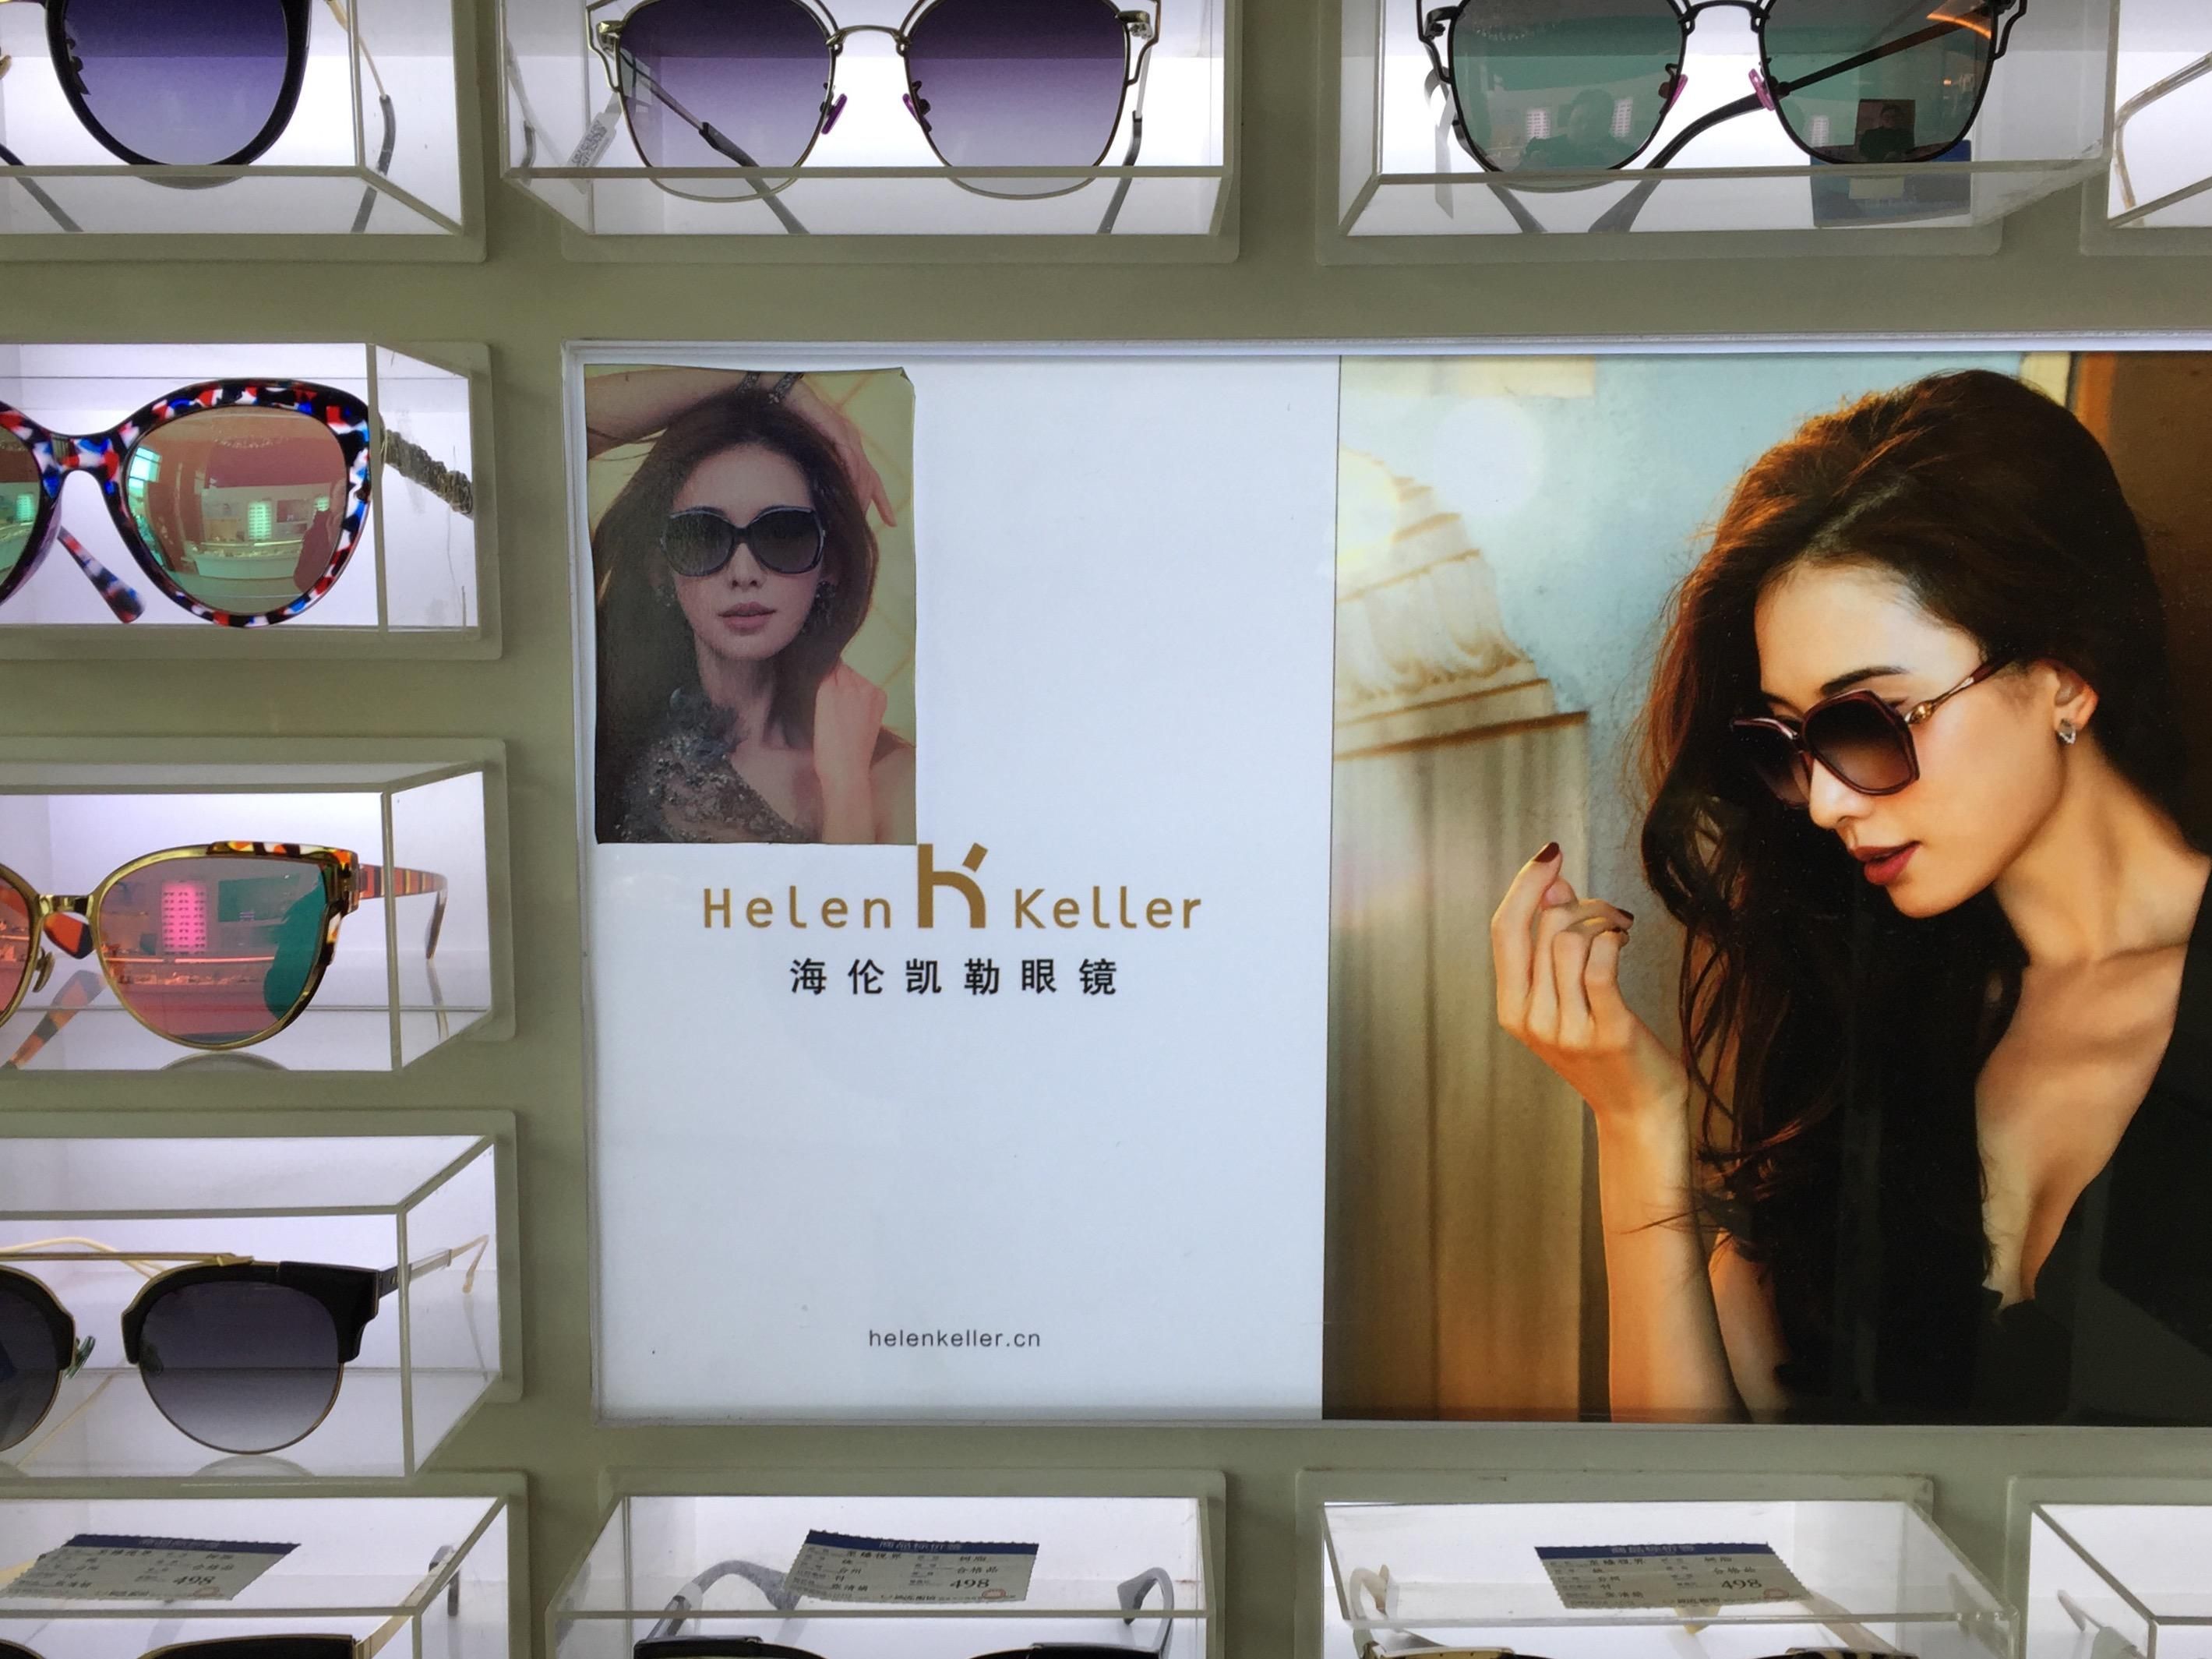 An eyeglass store in Xi'an, China